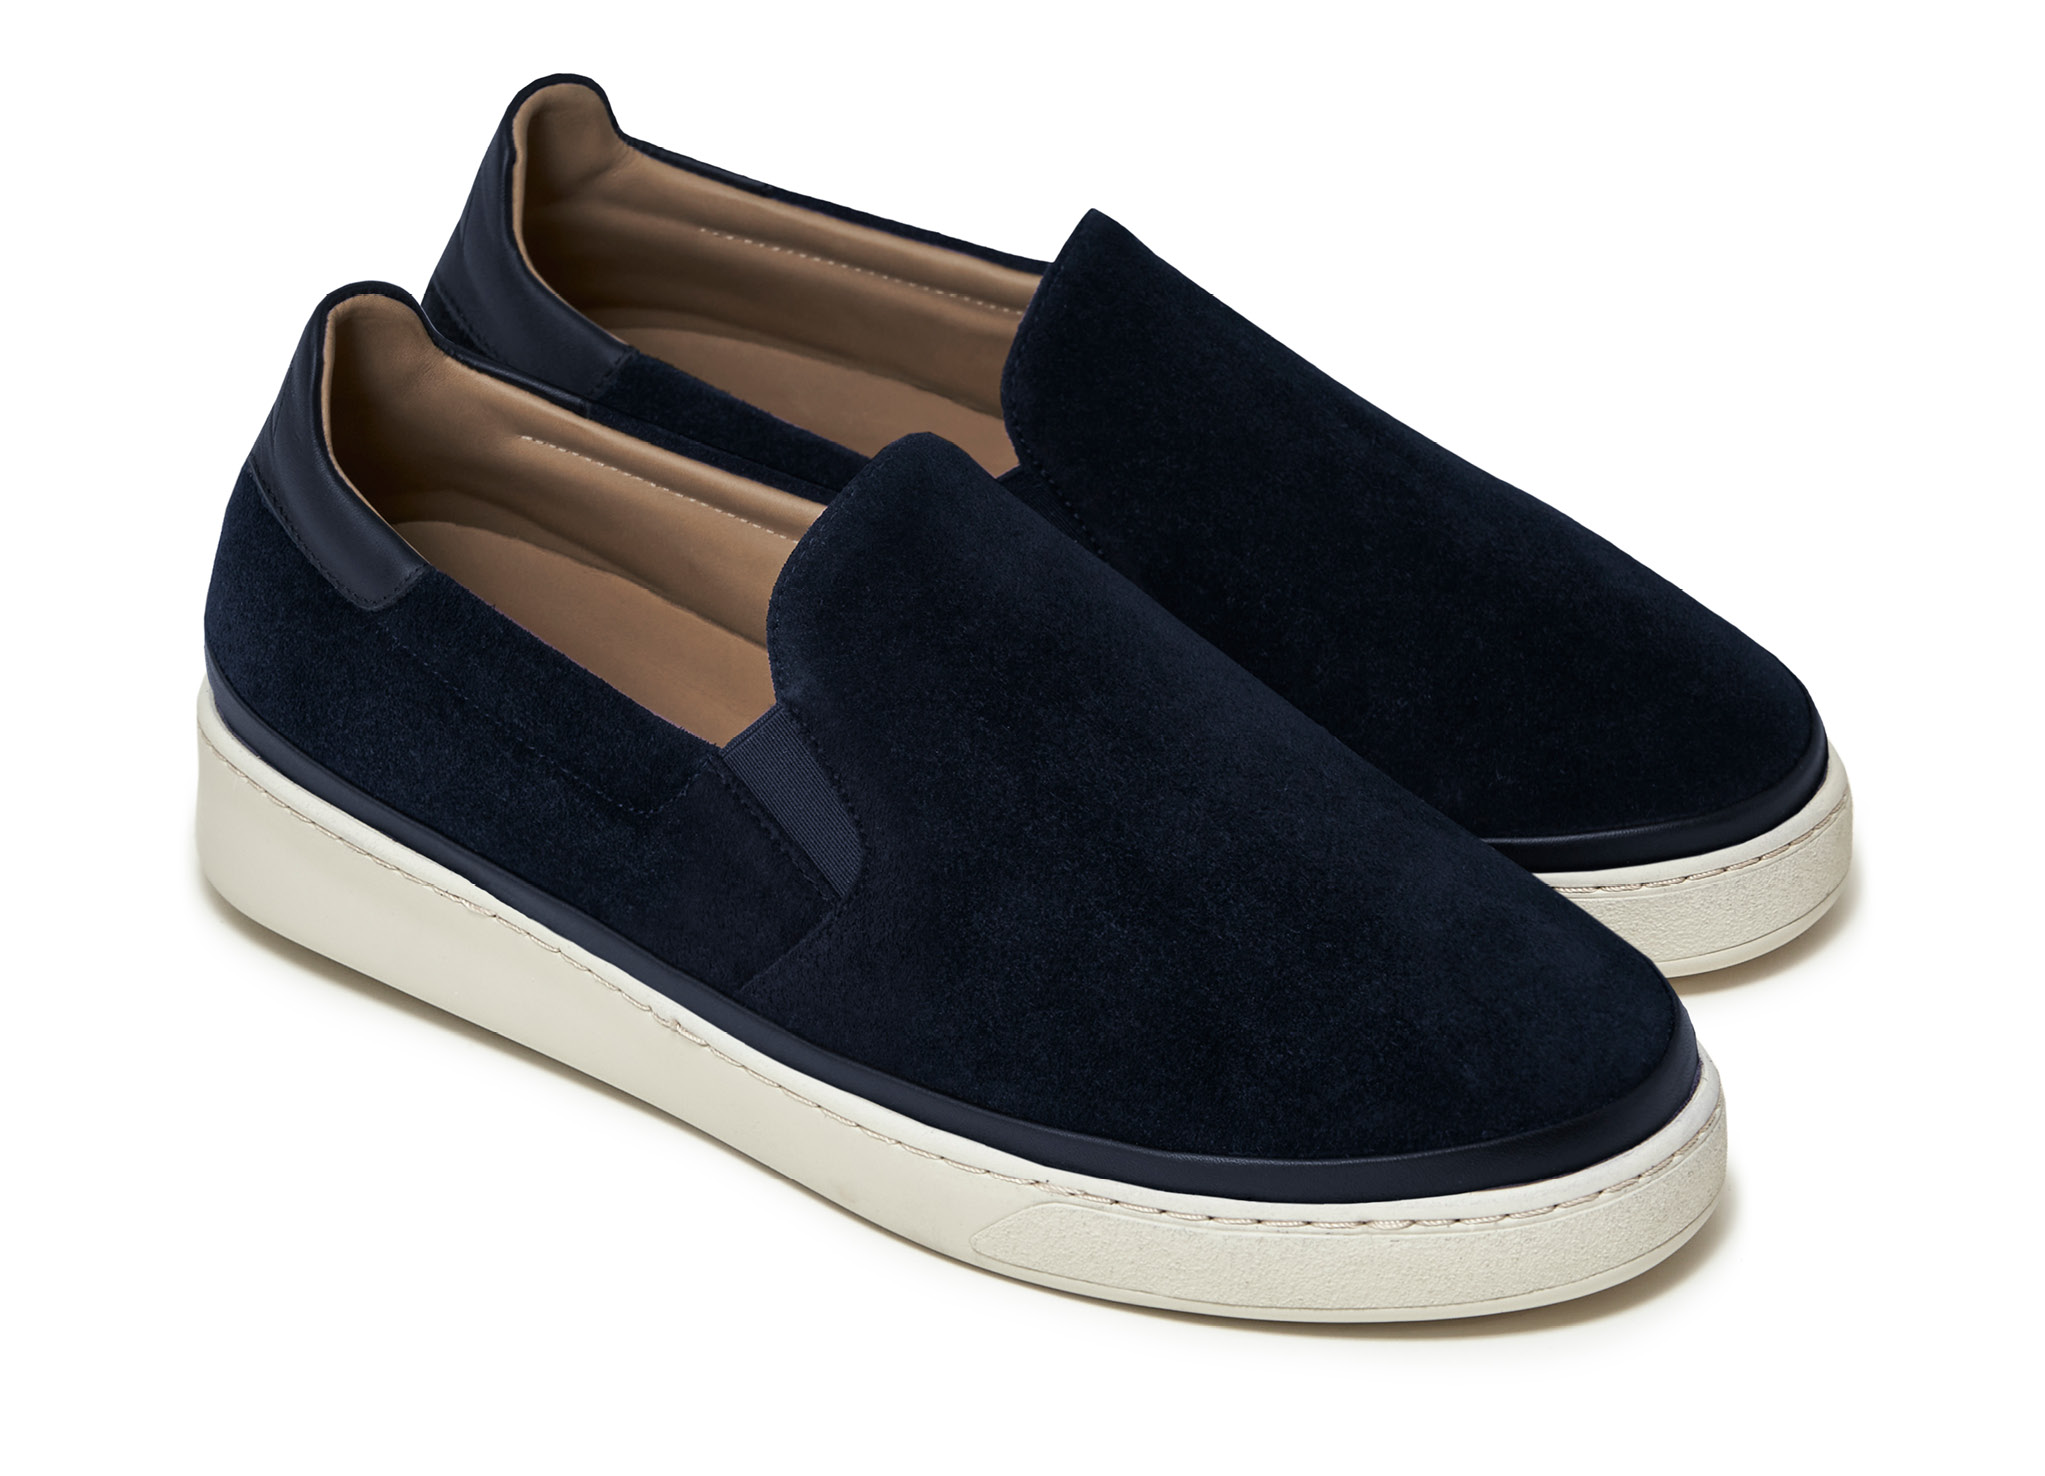 Mens Slip-On Sneakers in Dark Blue Suede | MULO shoes